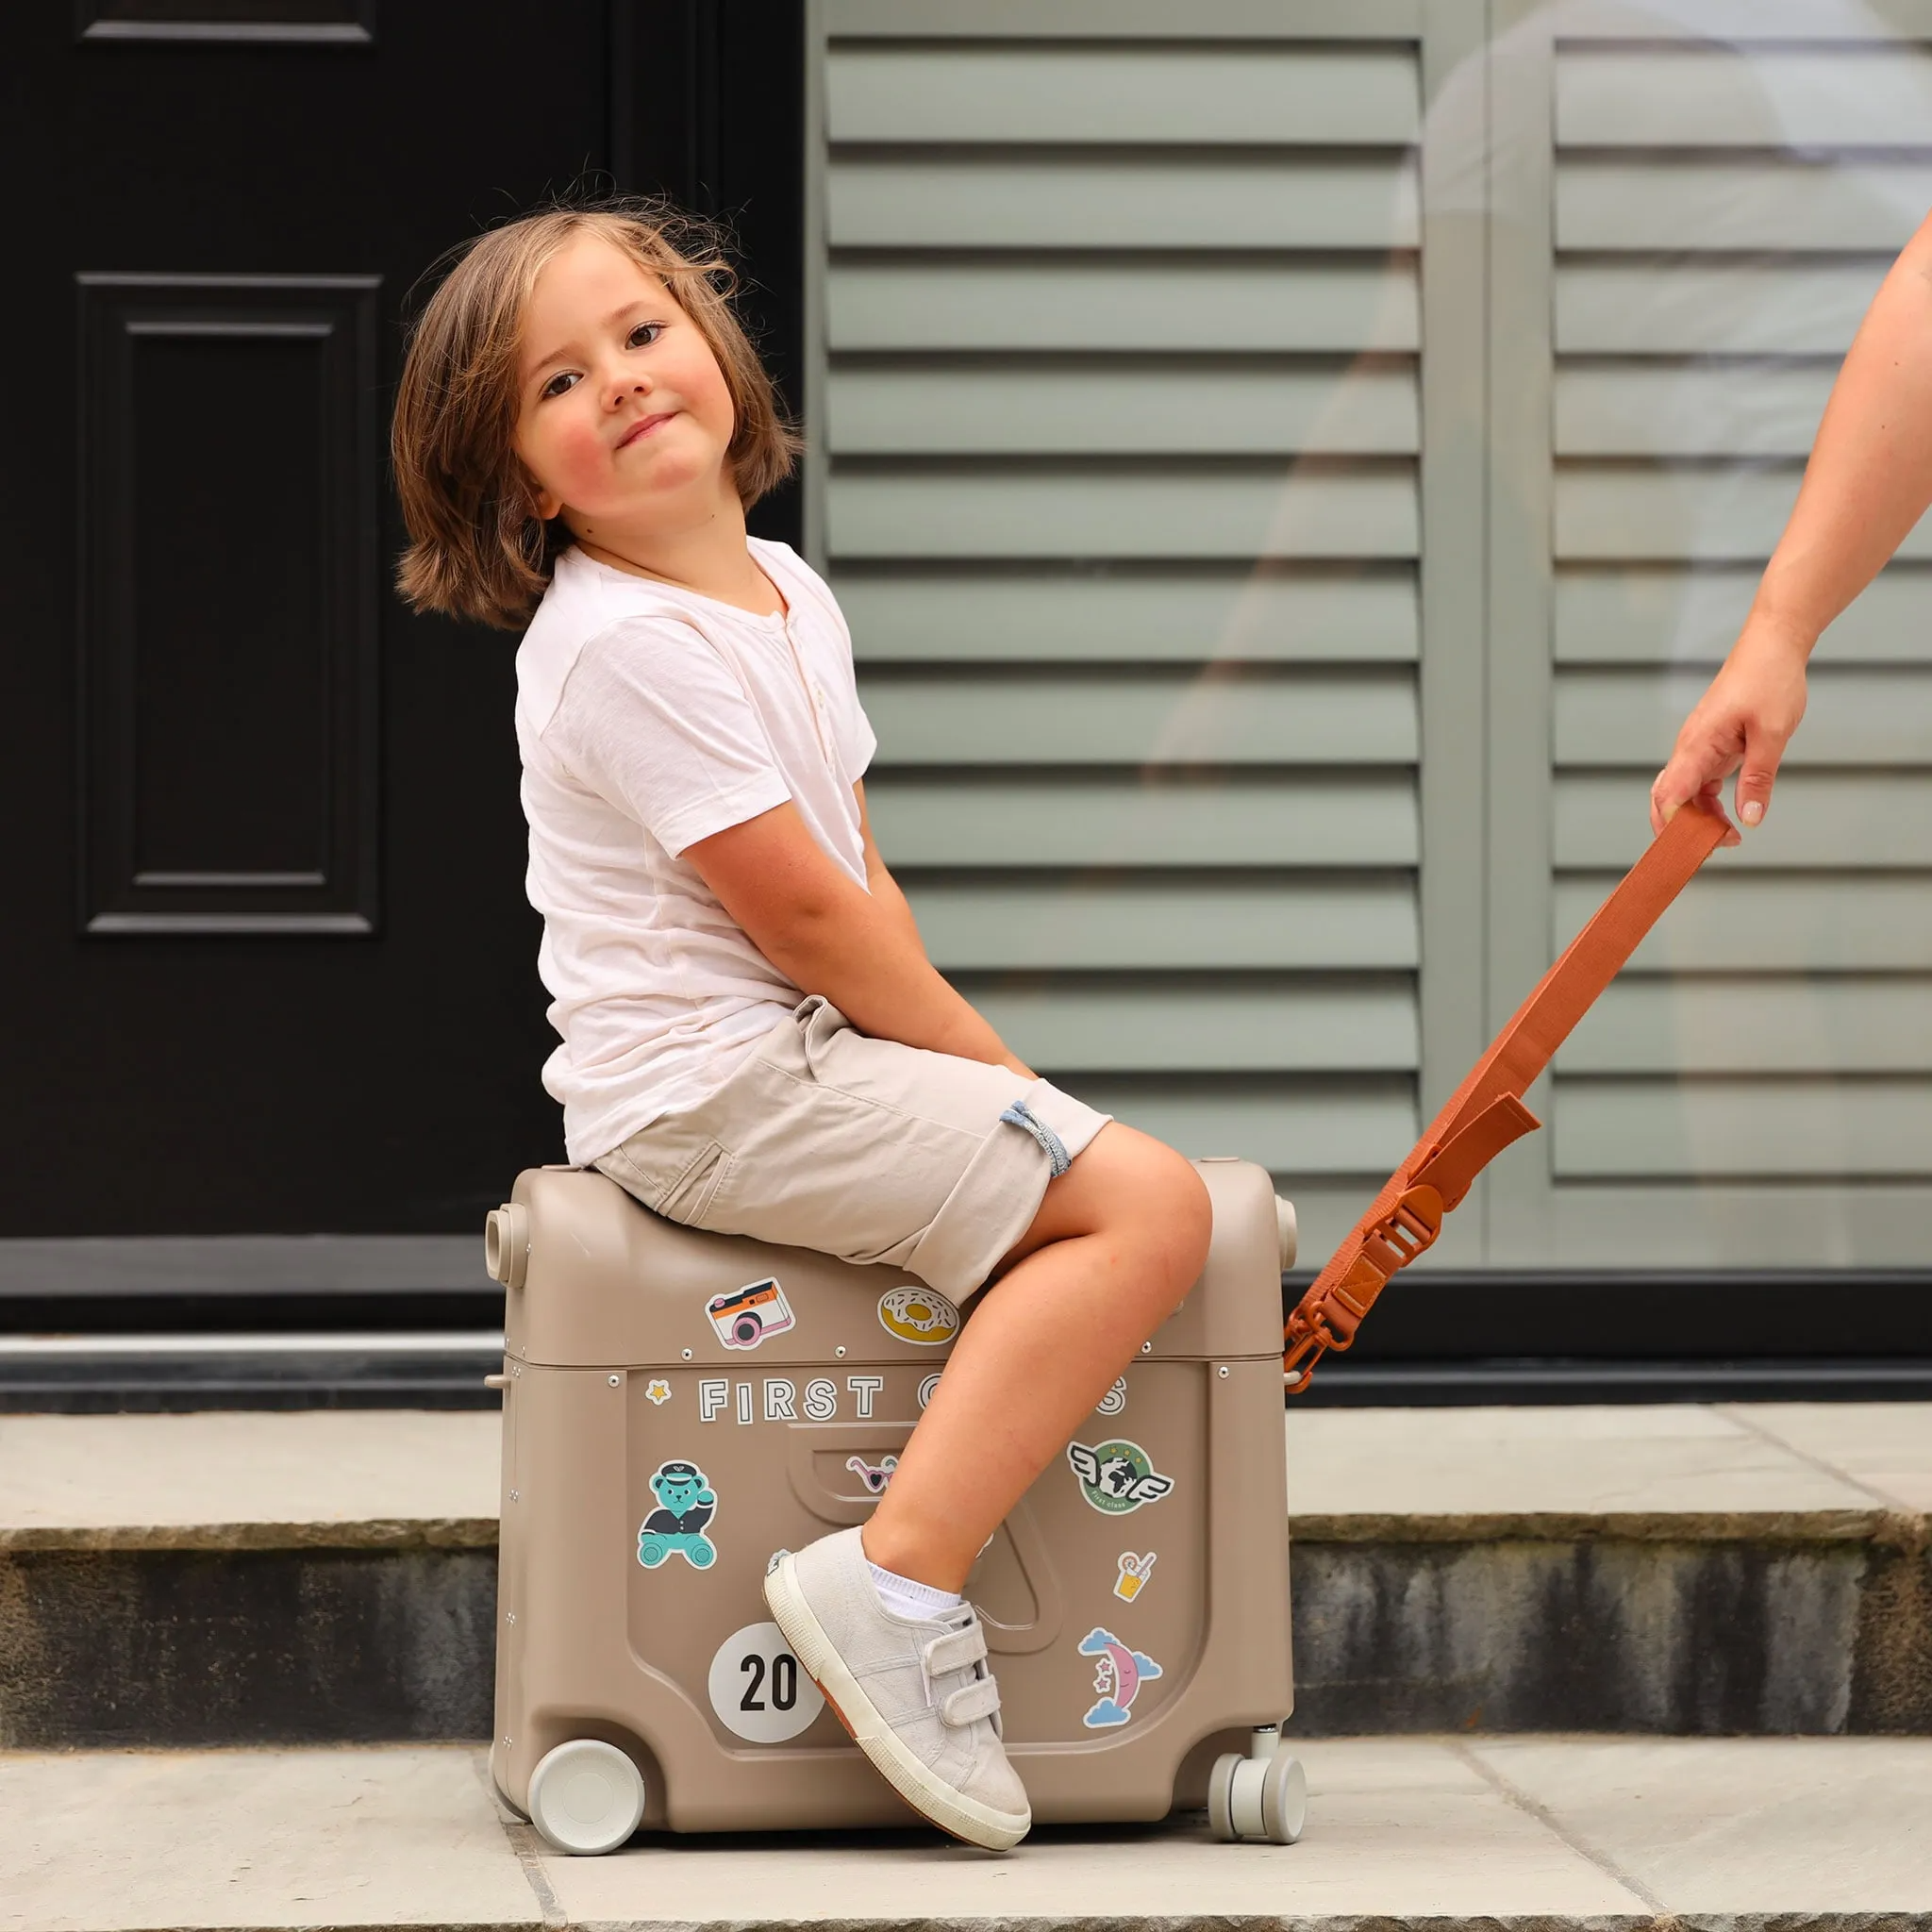 Bed Box de JetKids: lit et valise enfant pour avion